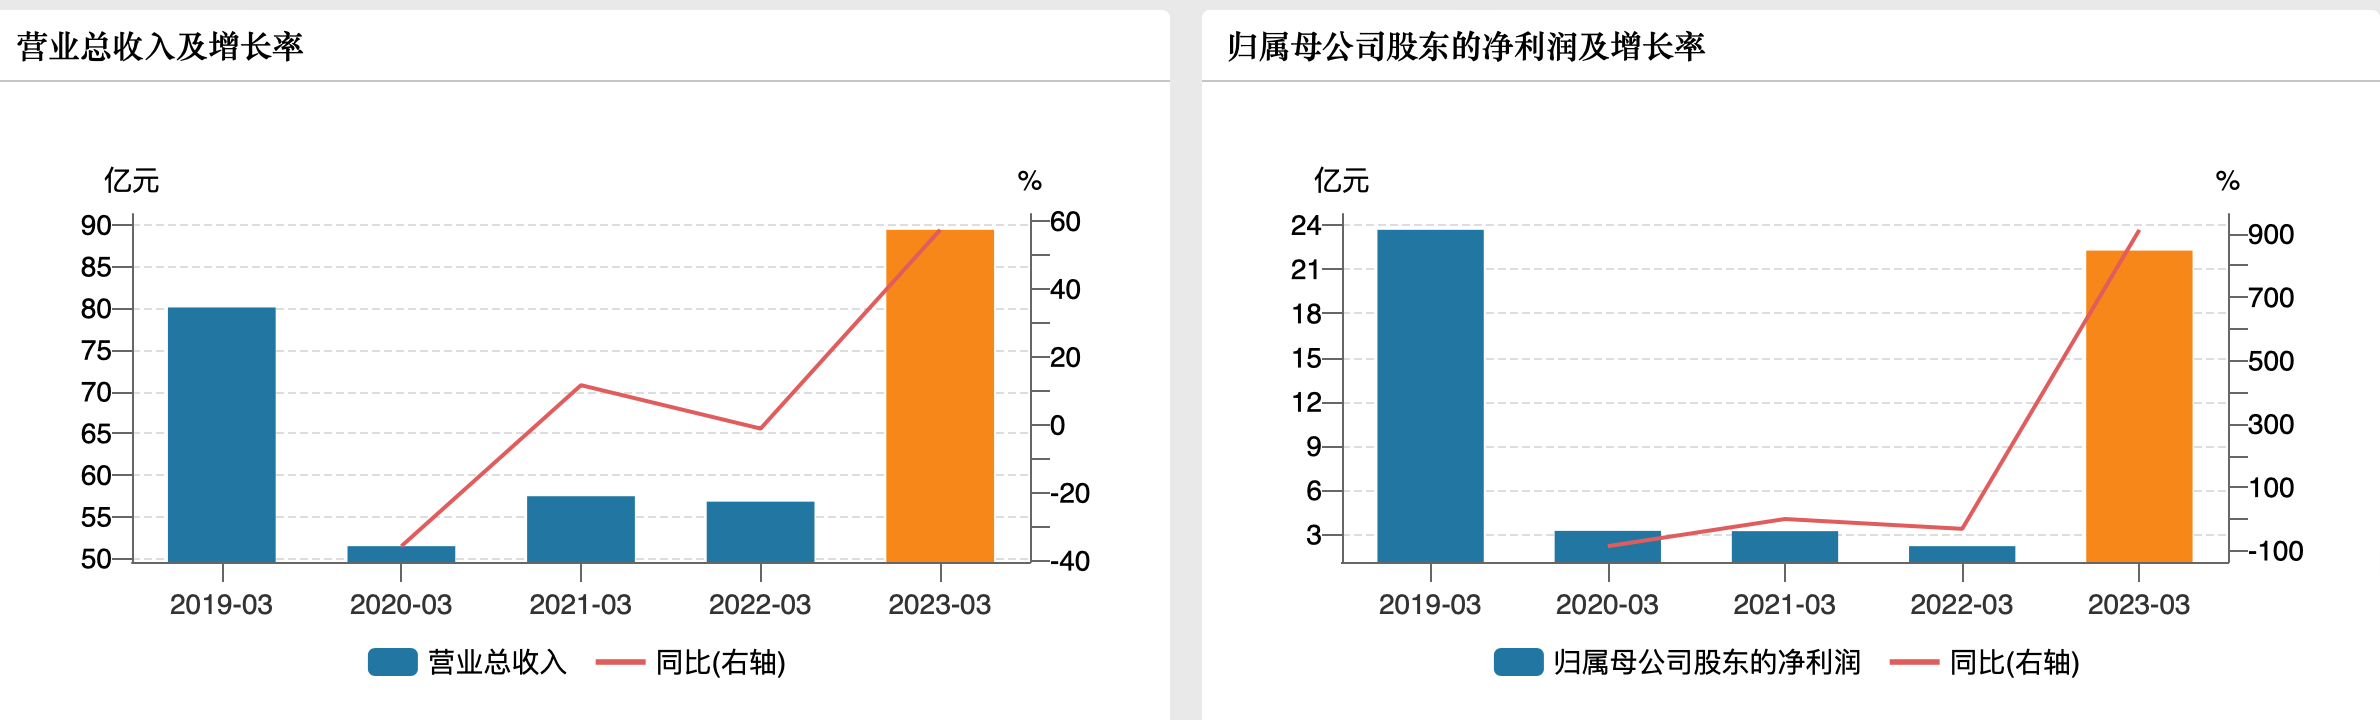 京沪高铁去年亏损近6亿 今年一季度净利暴增9倍 恢复至疫情前水平